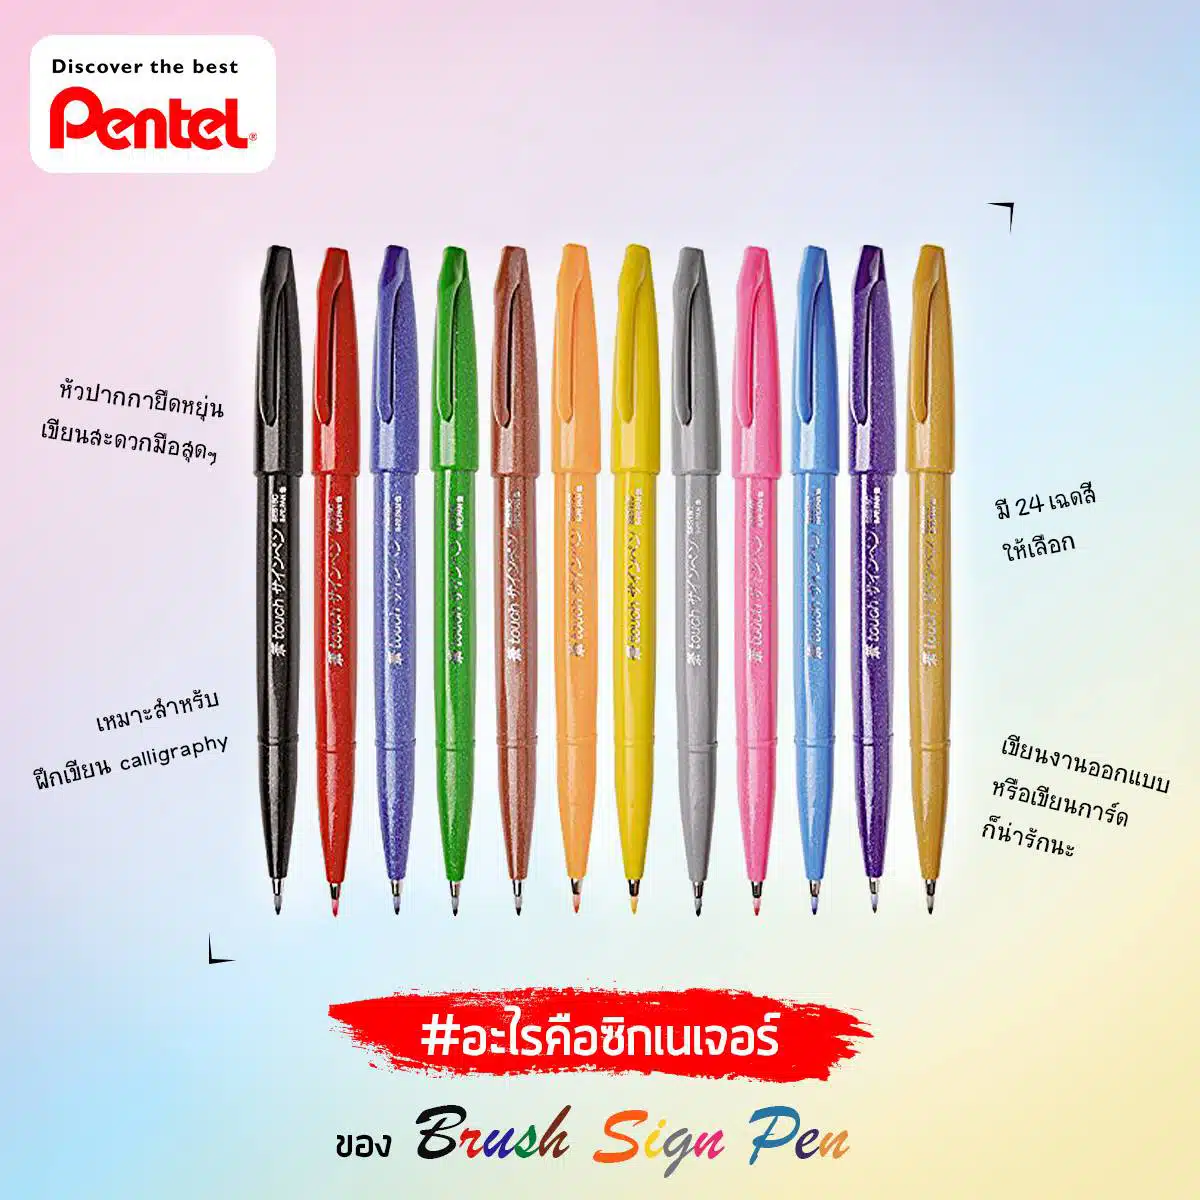 5 Pentel Brush Sign Pen